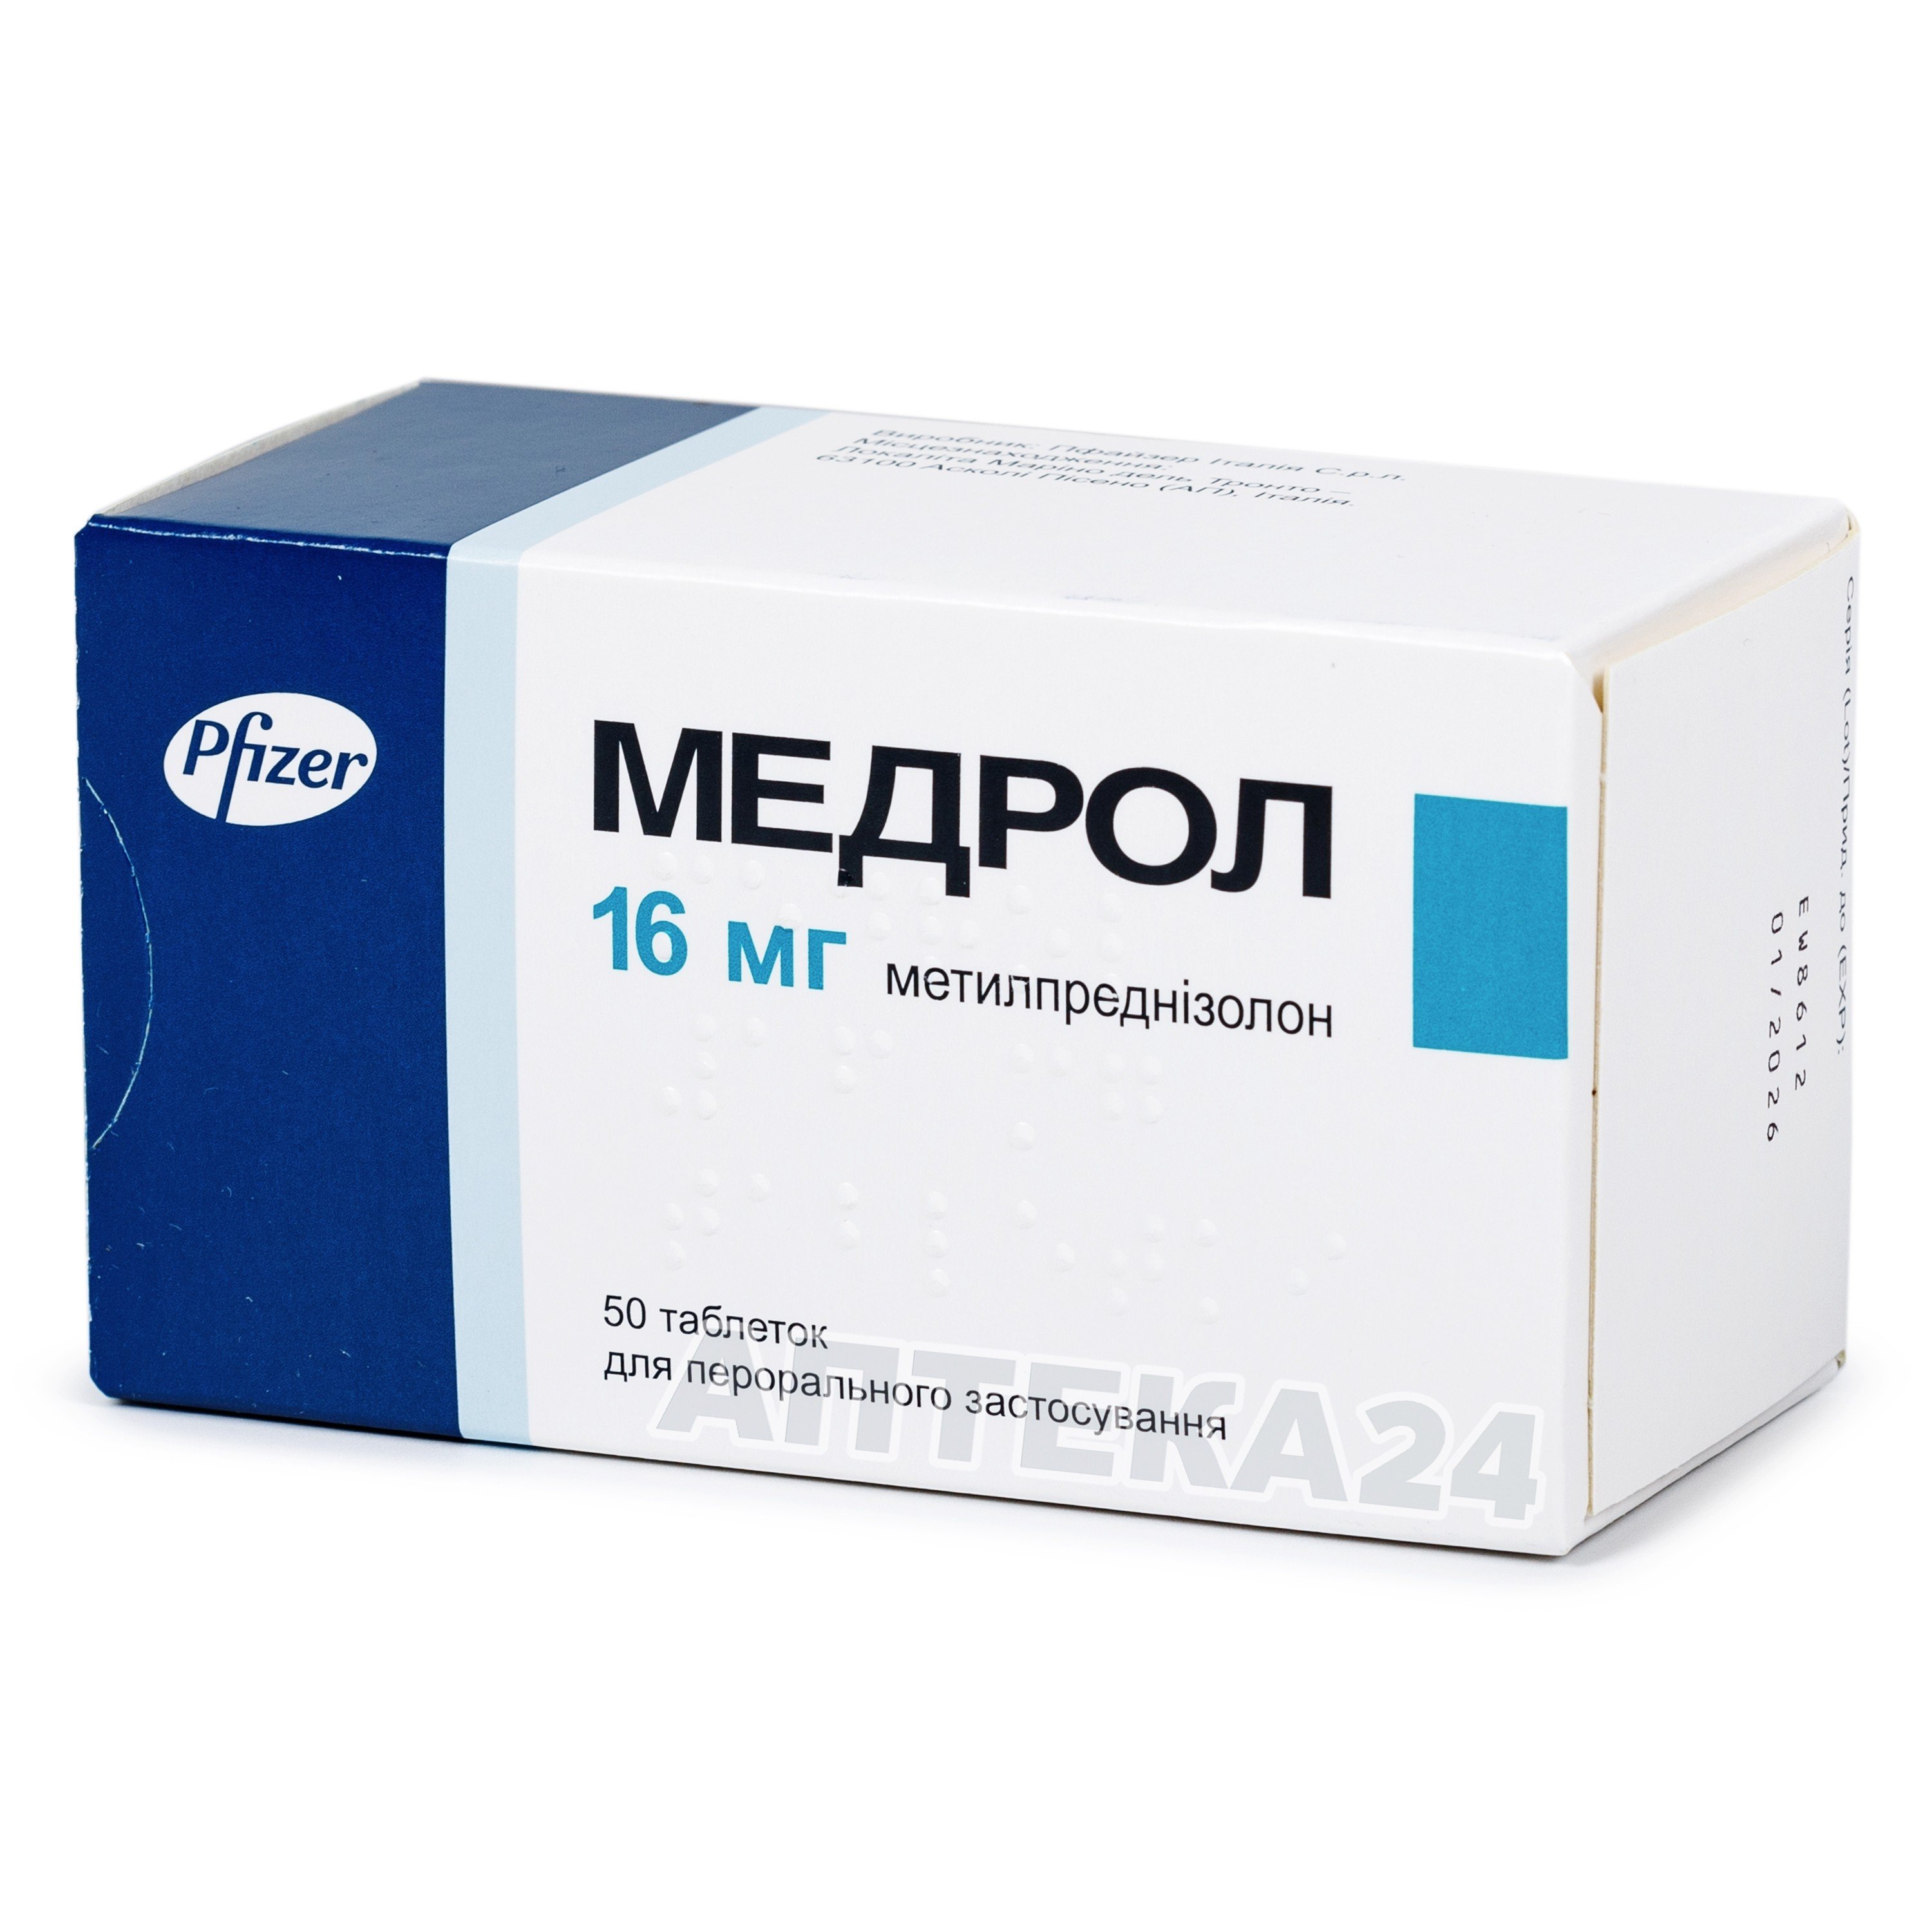 Чесні відгуки про Медрол таблетки по 16 мг, 50 шт. - Pfizer від наших .